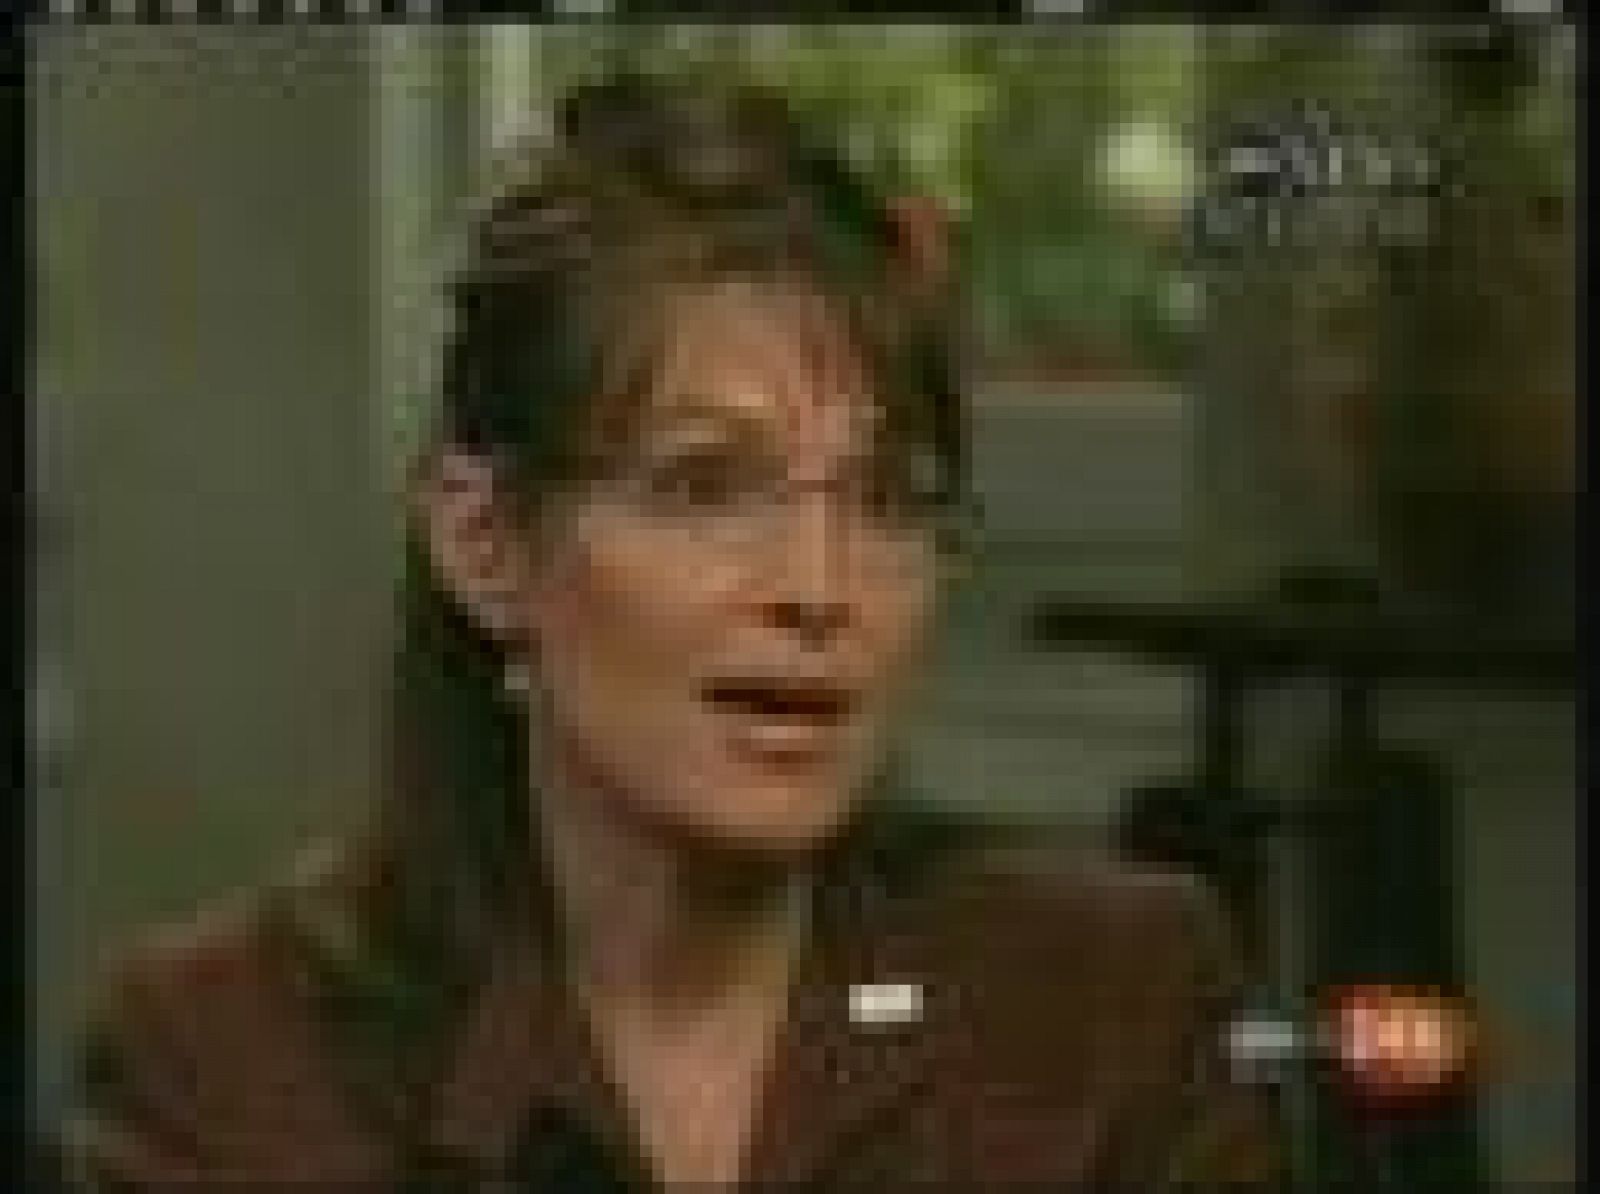  La candidata republicana a la vicepresidencia de los EE.UU., Sarah Palin, ha asegurado, en su primera entrevista televisiva, que no descarta declarar la guerra contra Rusia si vuelve a invadir Georgia.